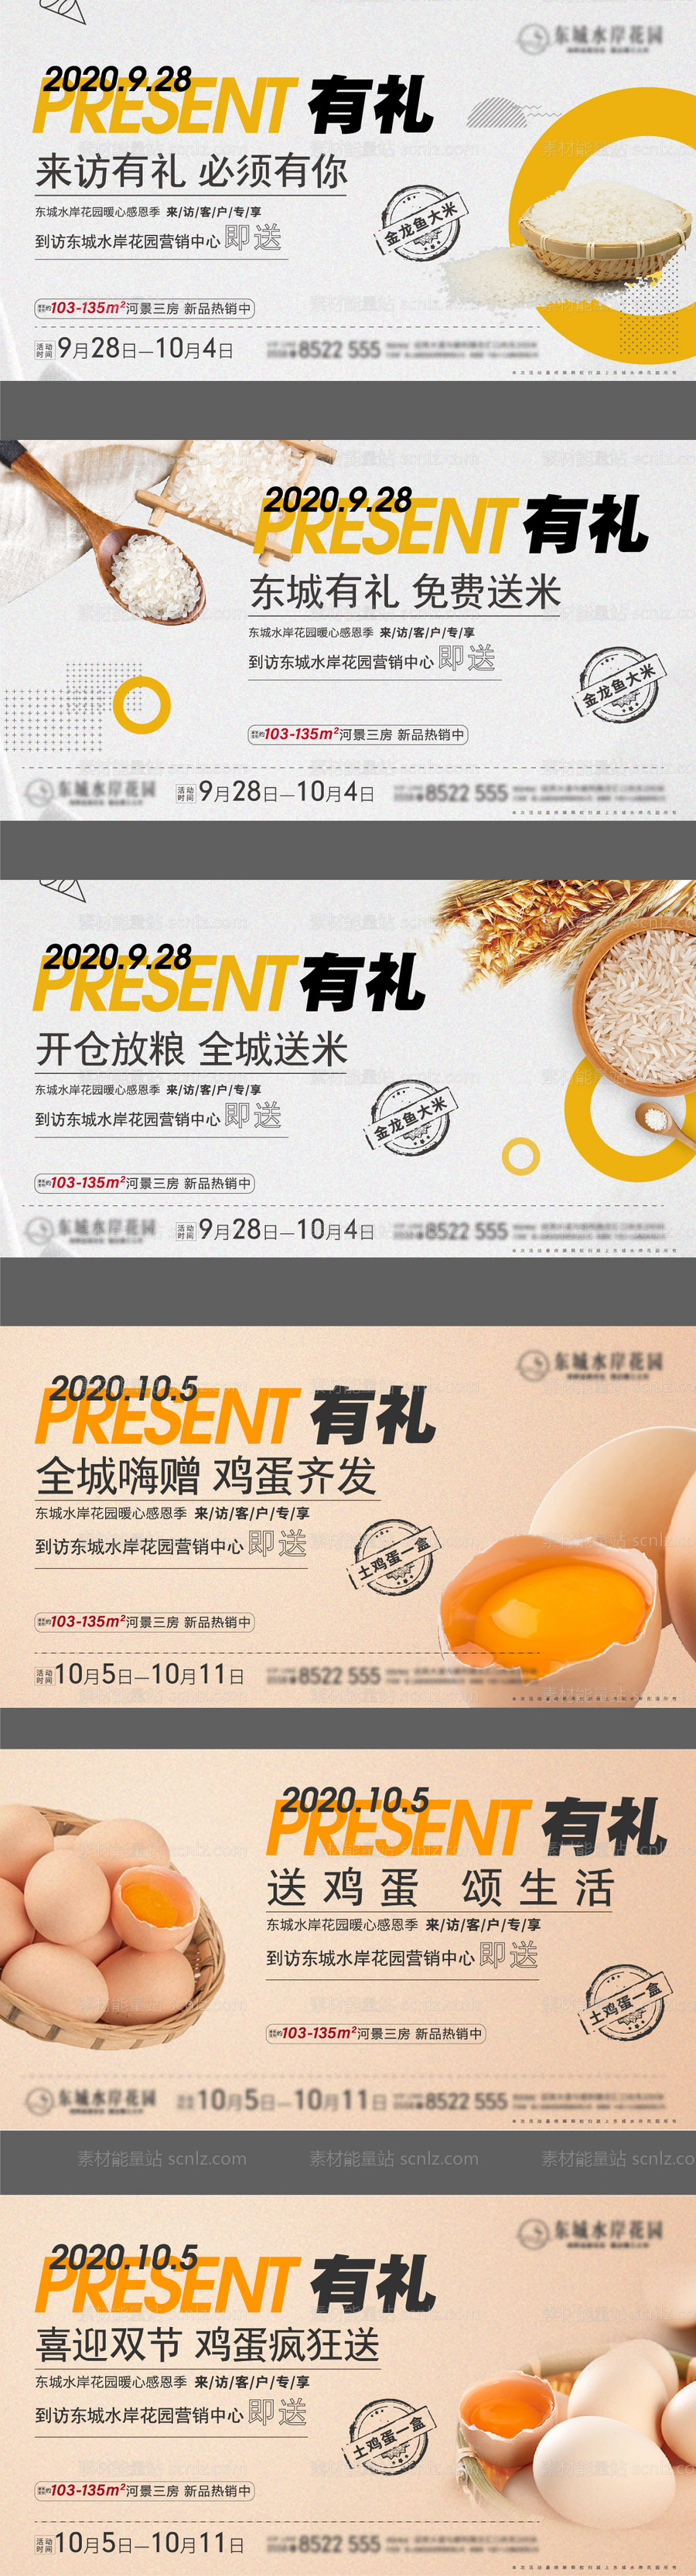 素材能量站-送大米鸡蛋系列微信海报